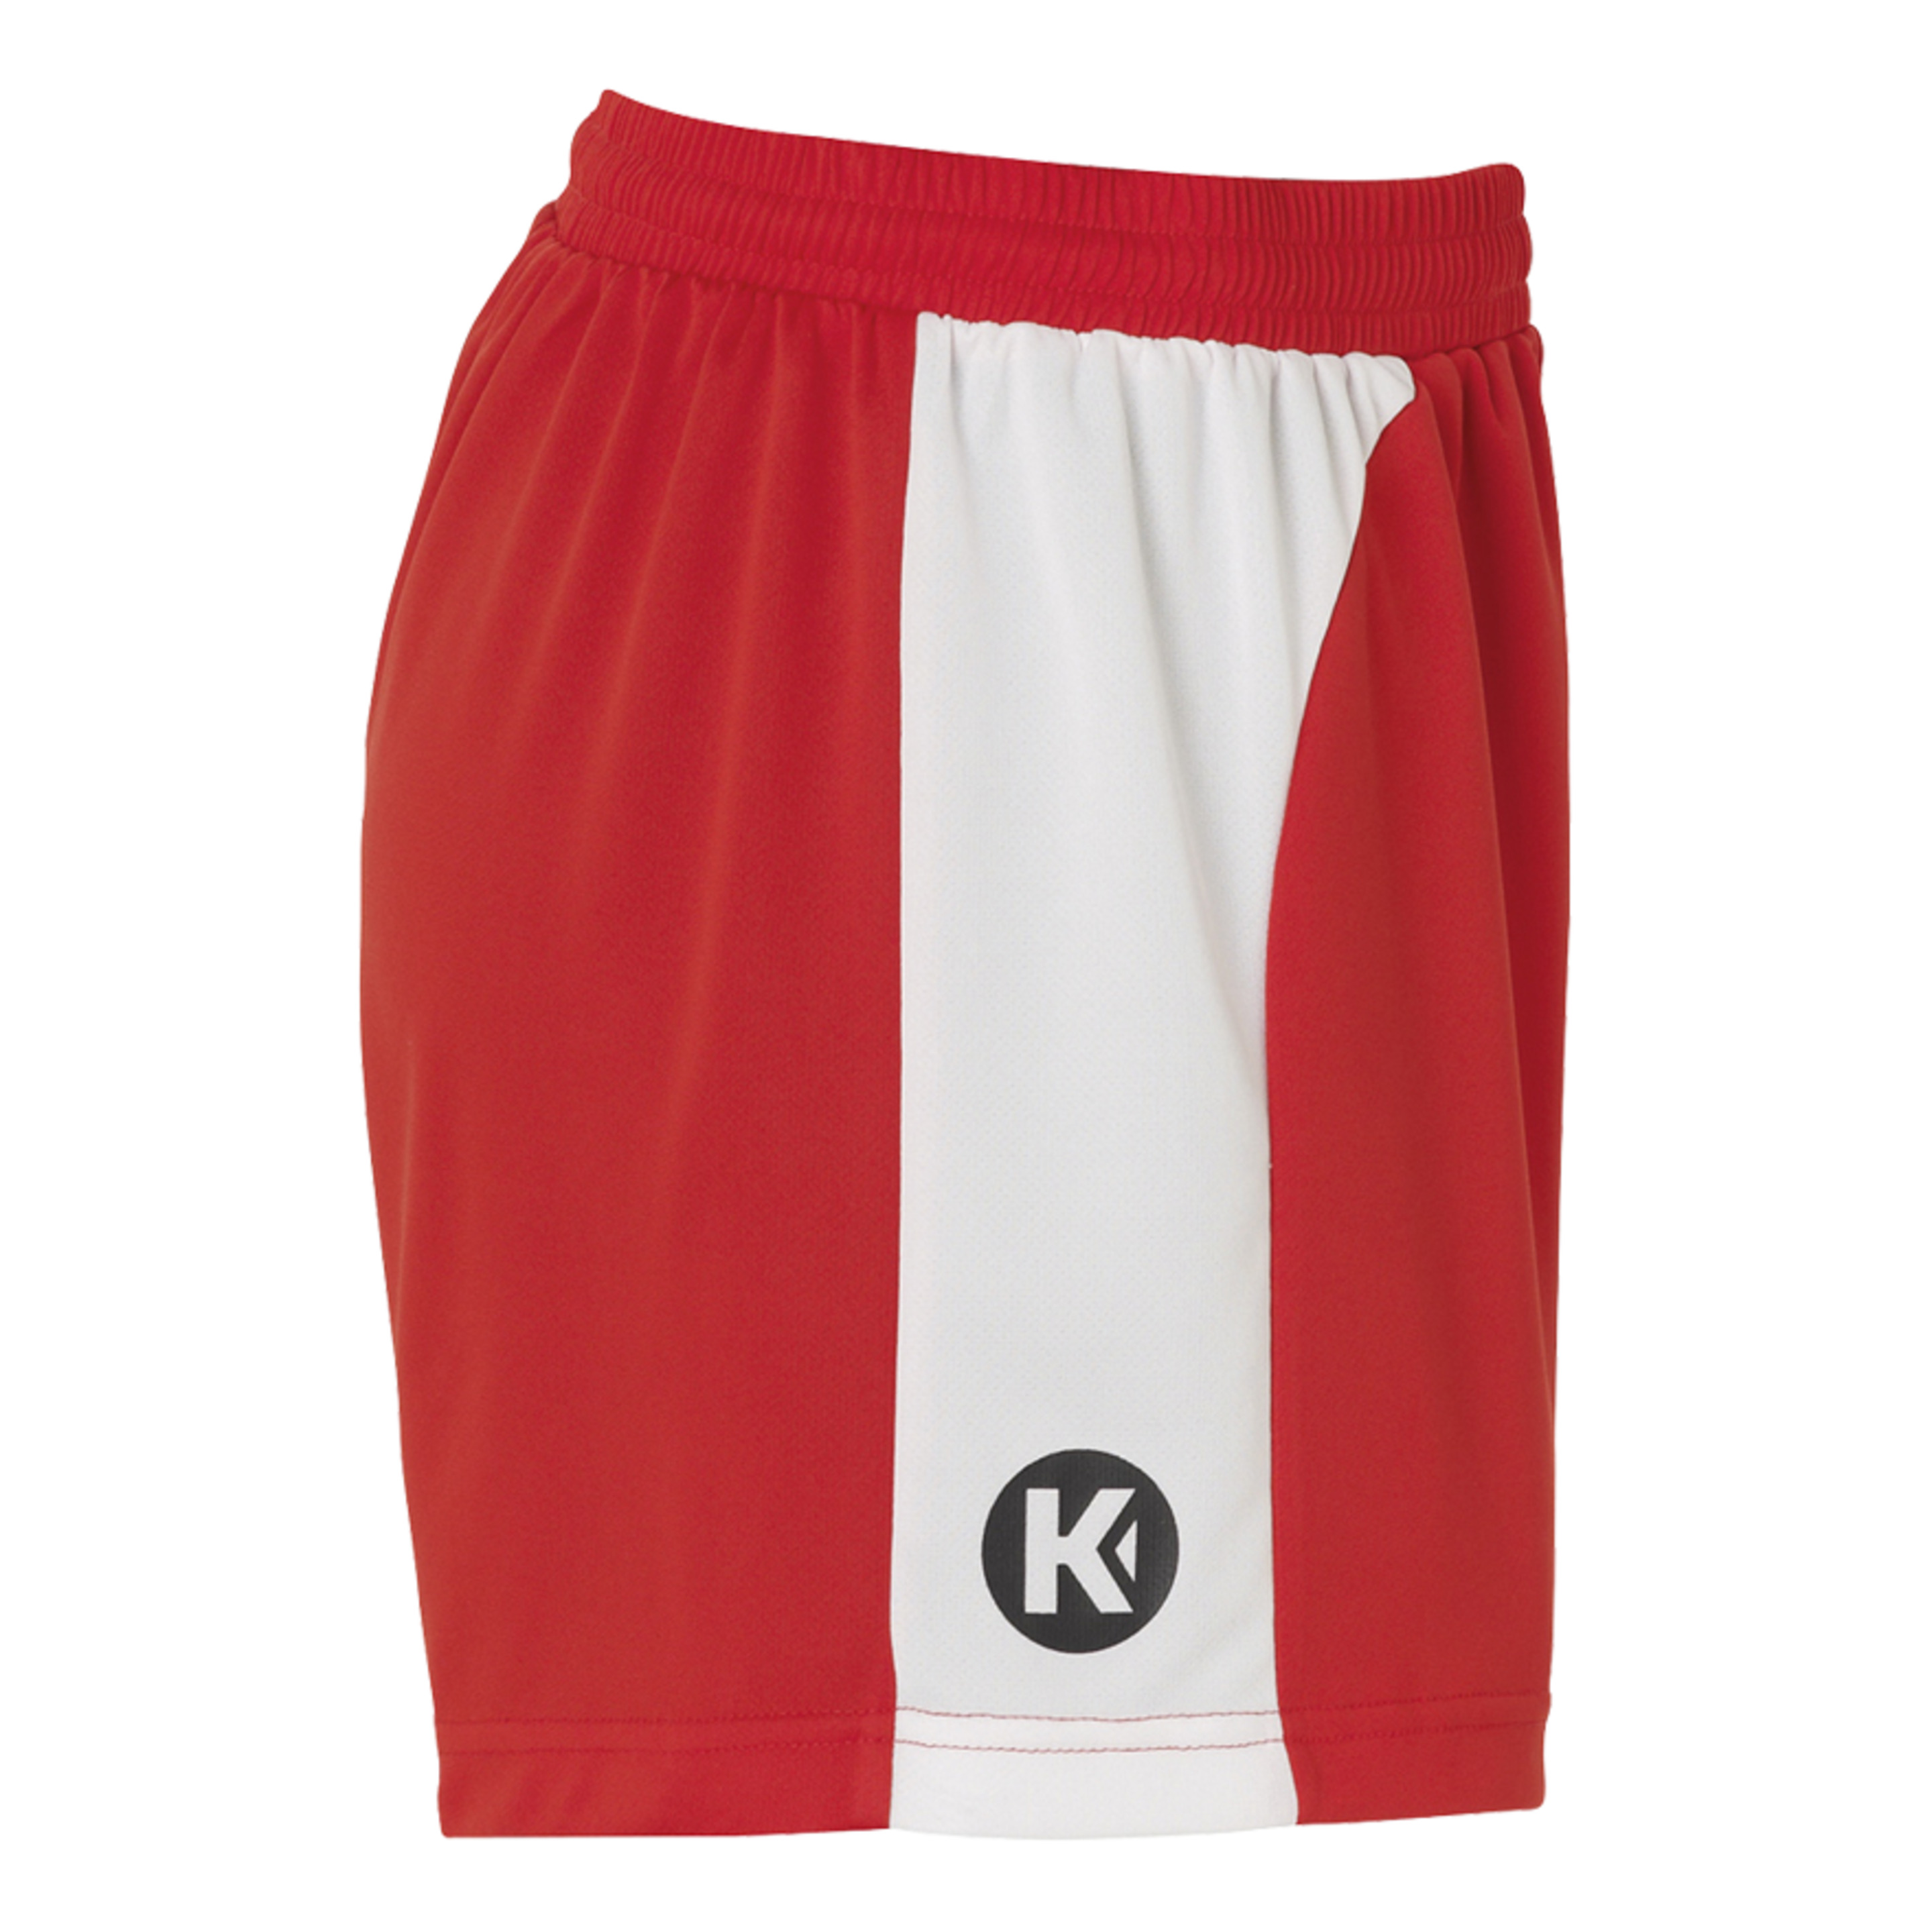 Peak Shorts De Mujer Rojo/blanco Kempa